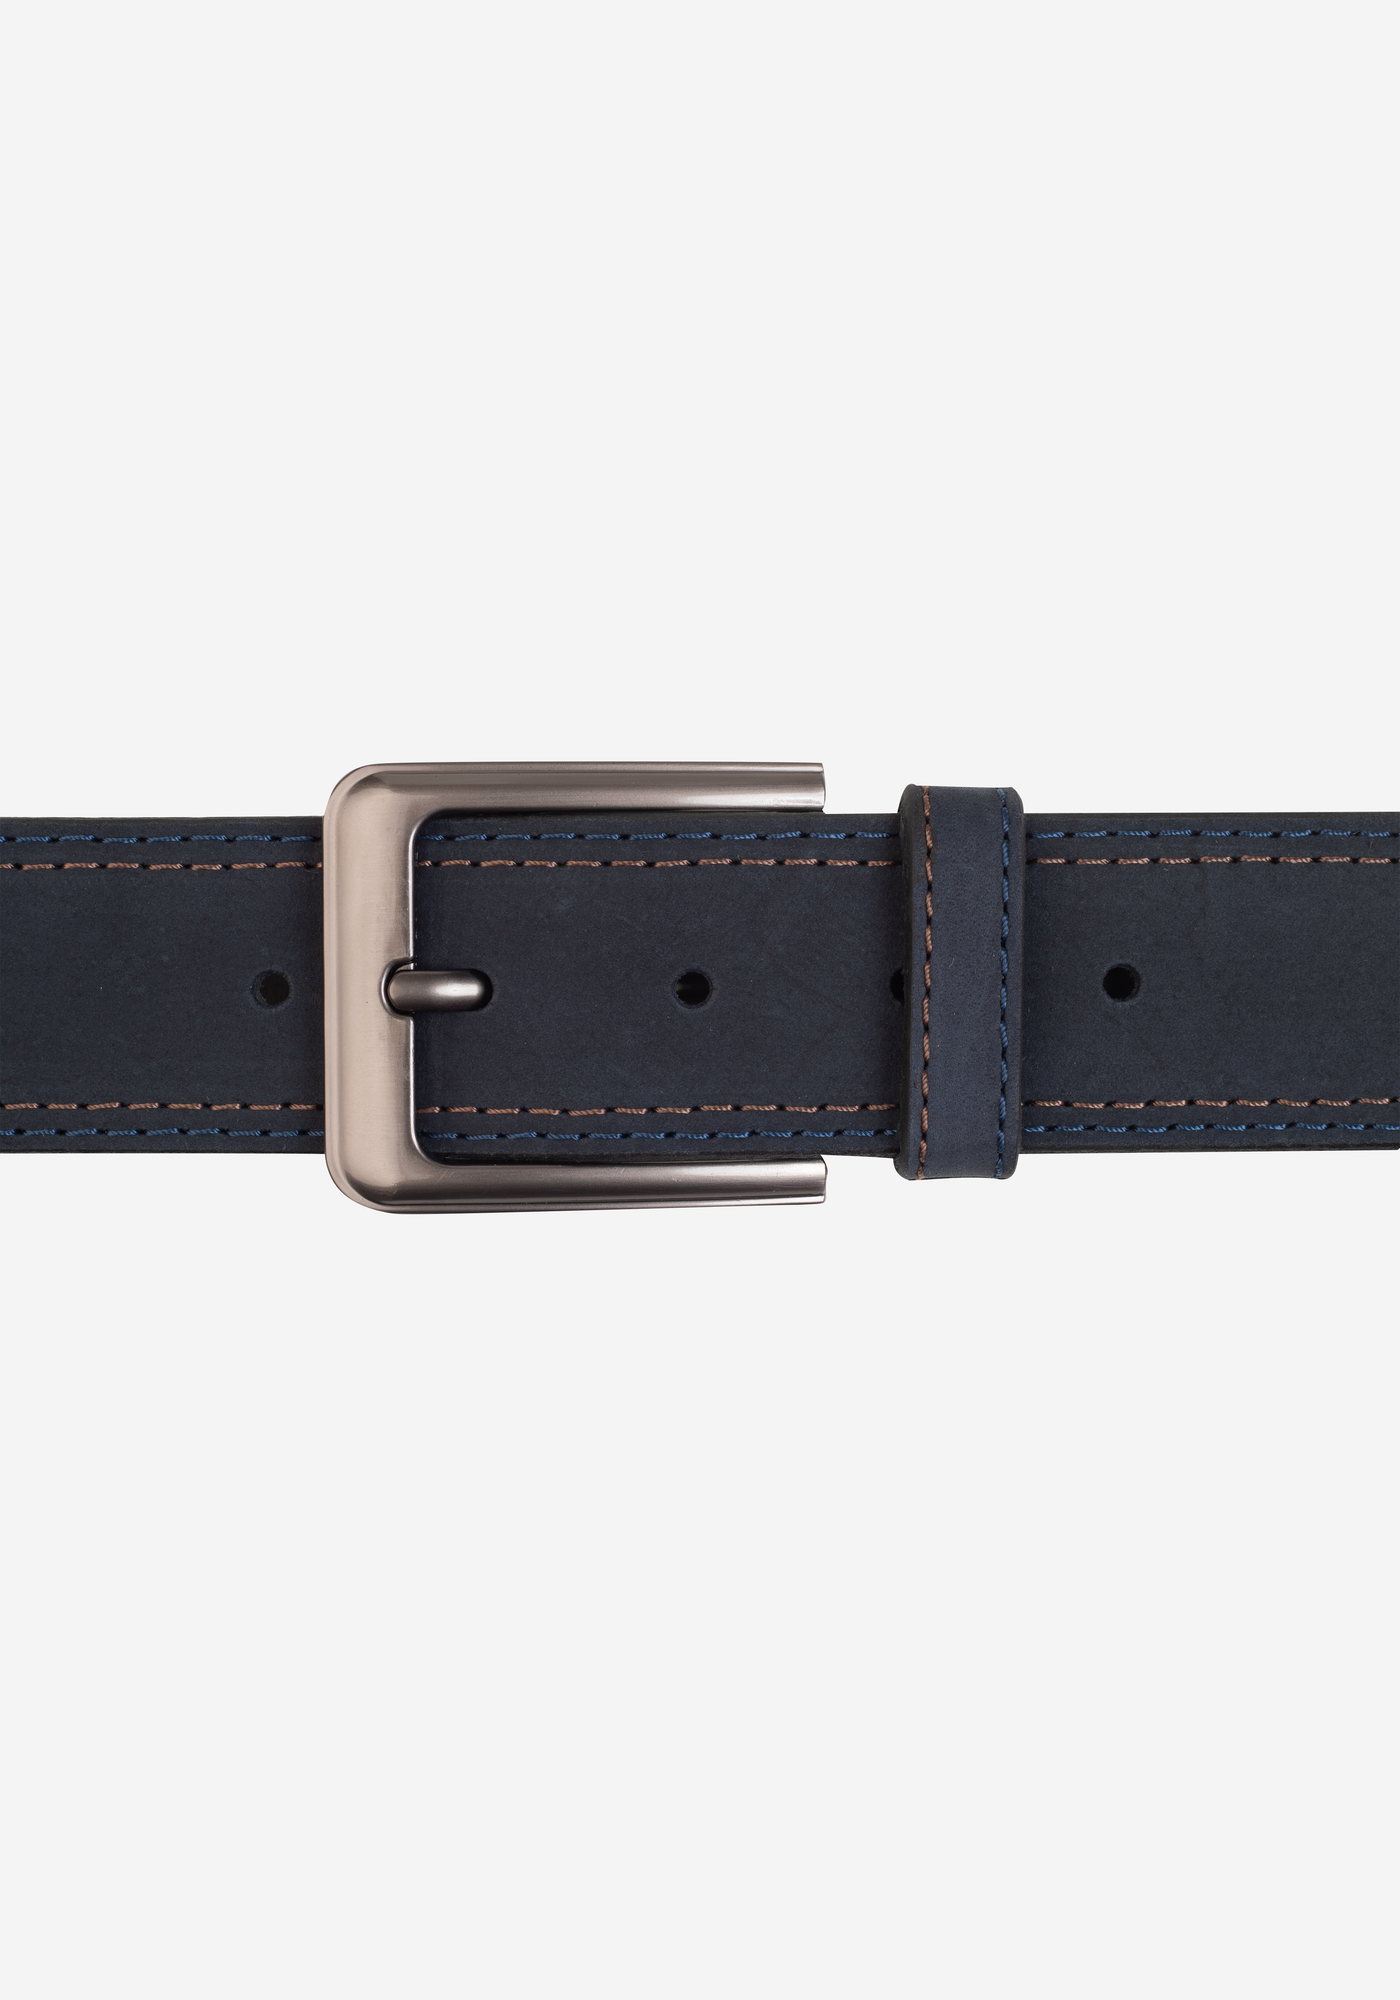 Teal Blue Genuine Leather Belt